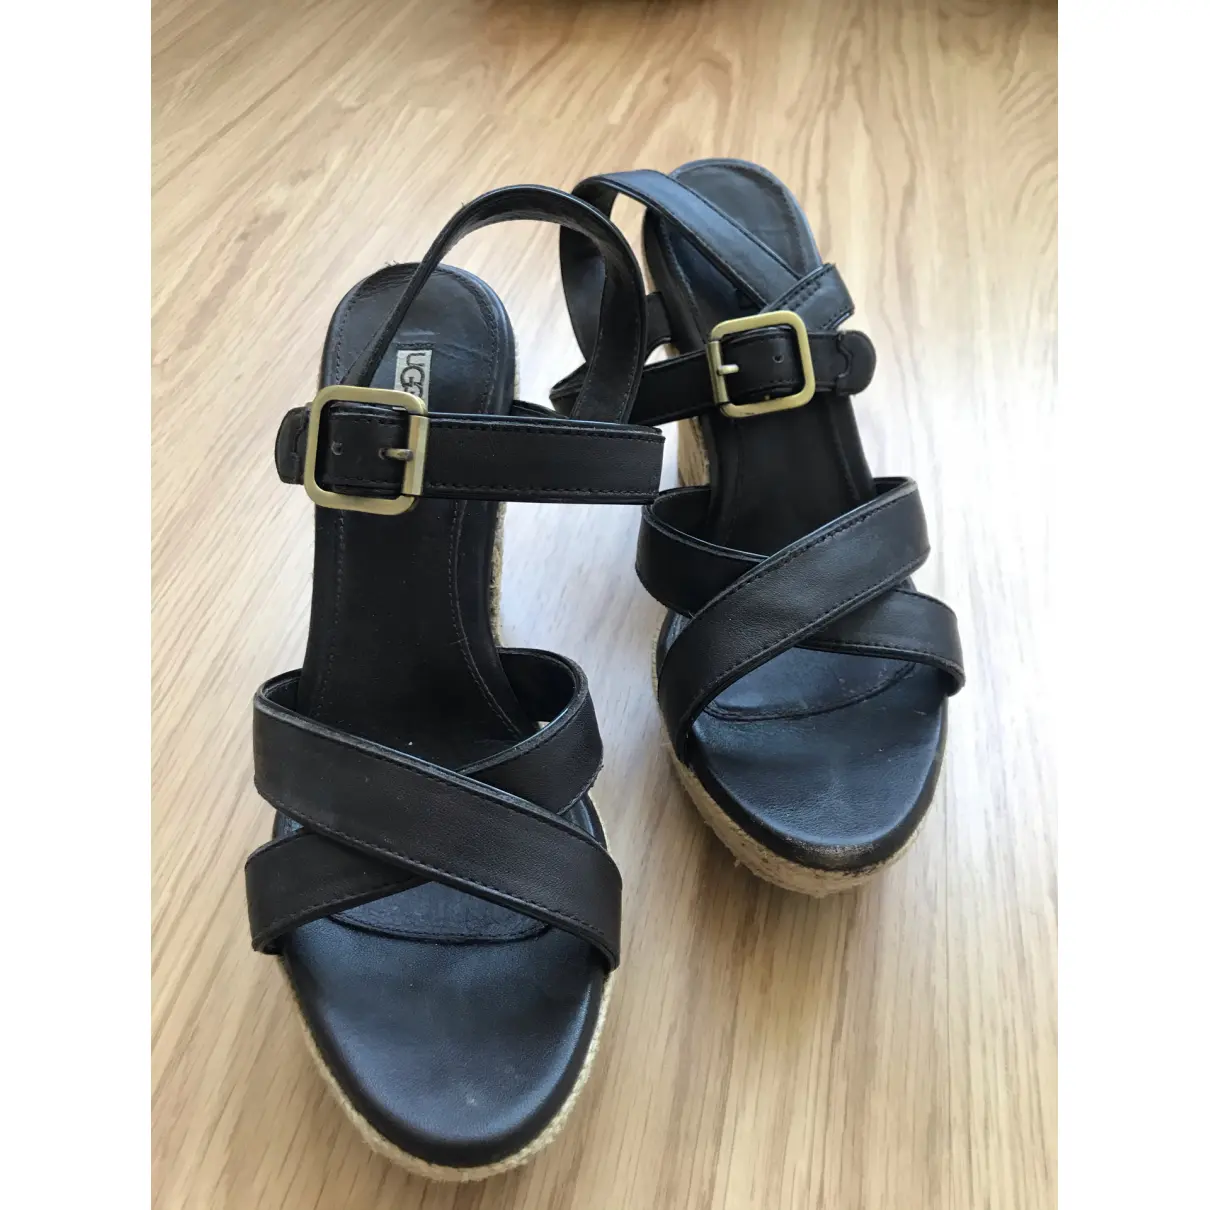 Buy Ugg Leather sandal online